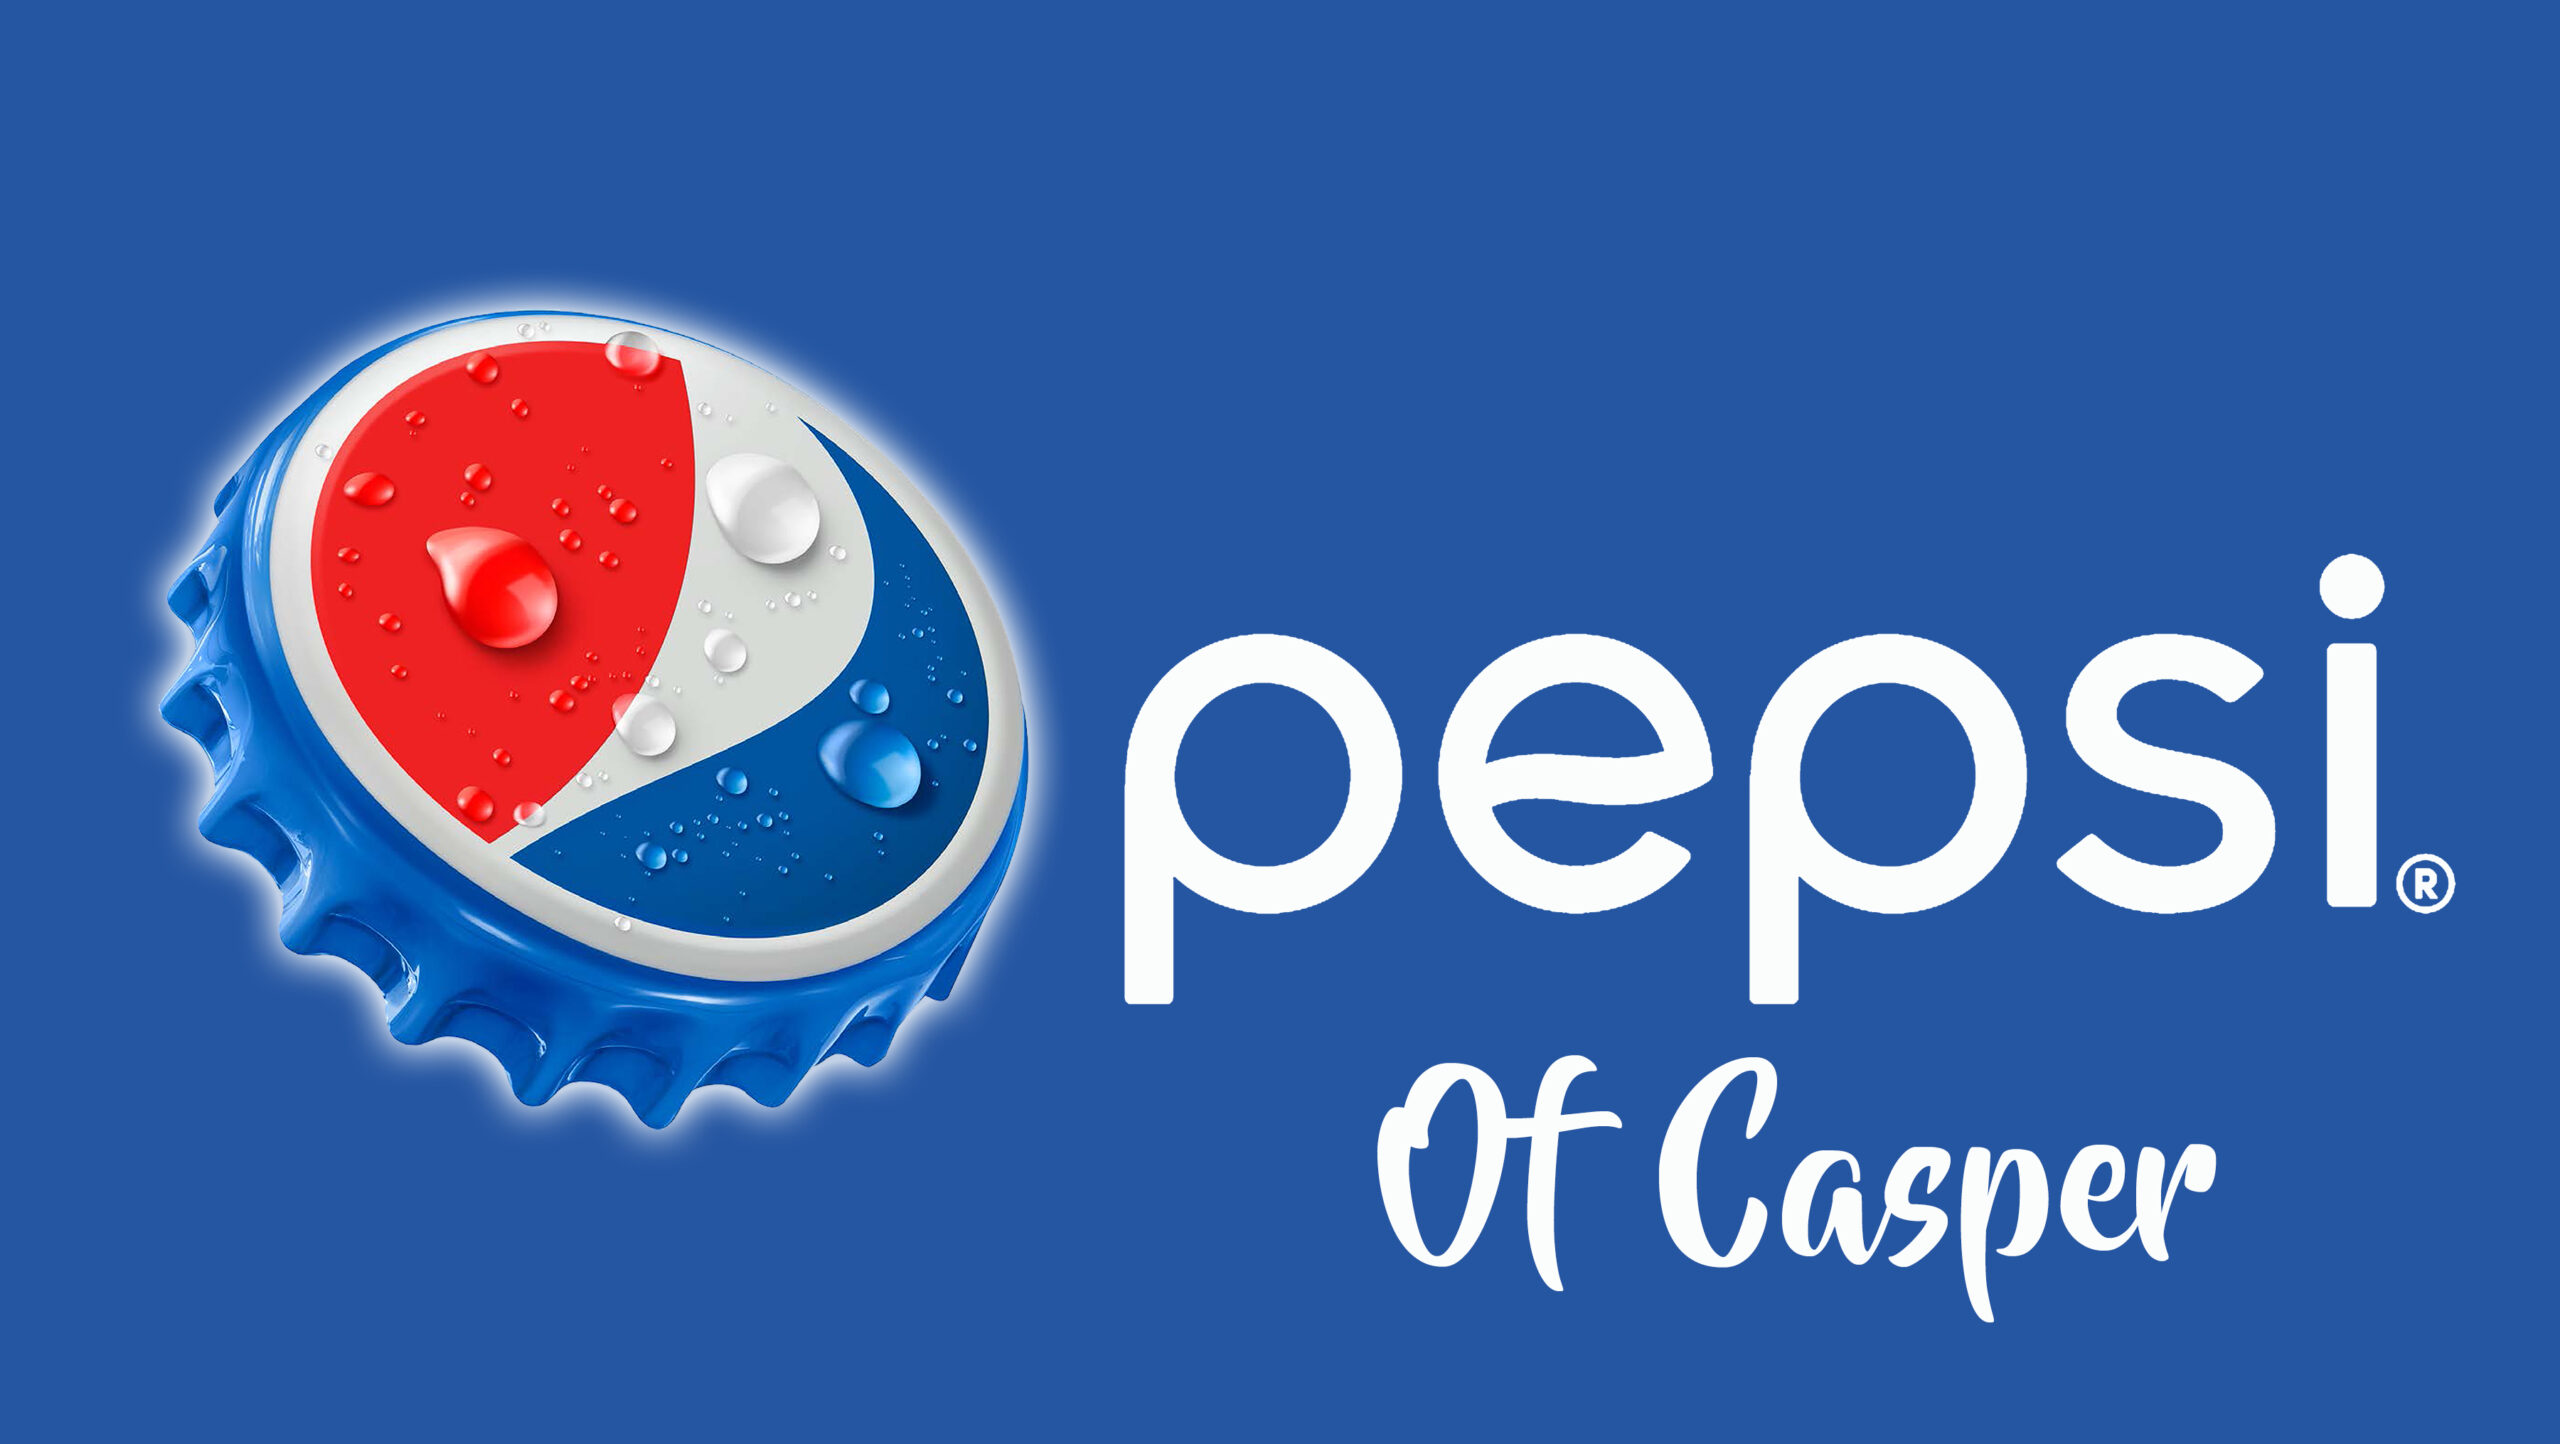 Pepsi of Casper